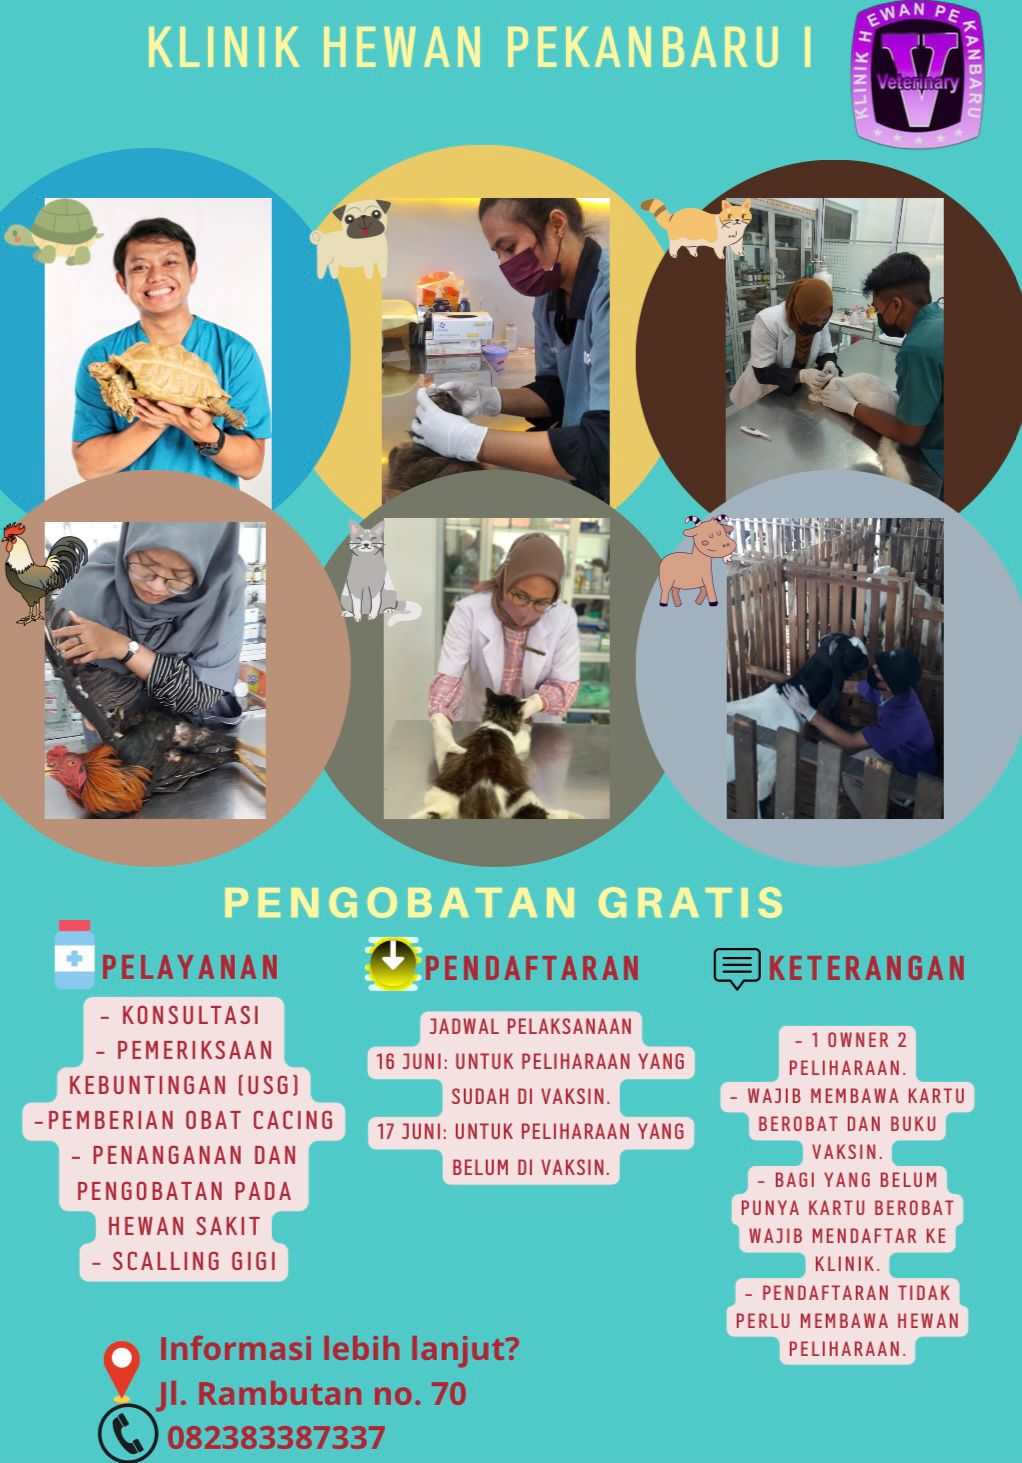 Kelinik Hewan Pekanbaru I di Jalan Rambutan No 69 Kembali Adakan Pengobatan Gratis